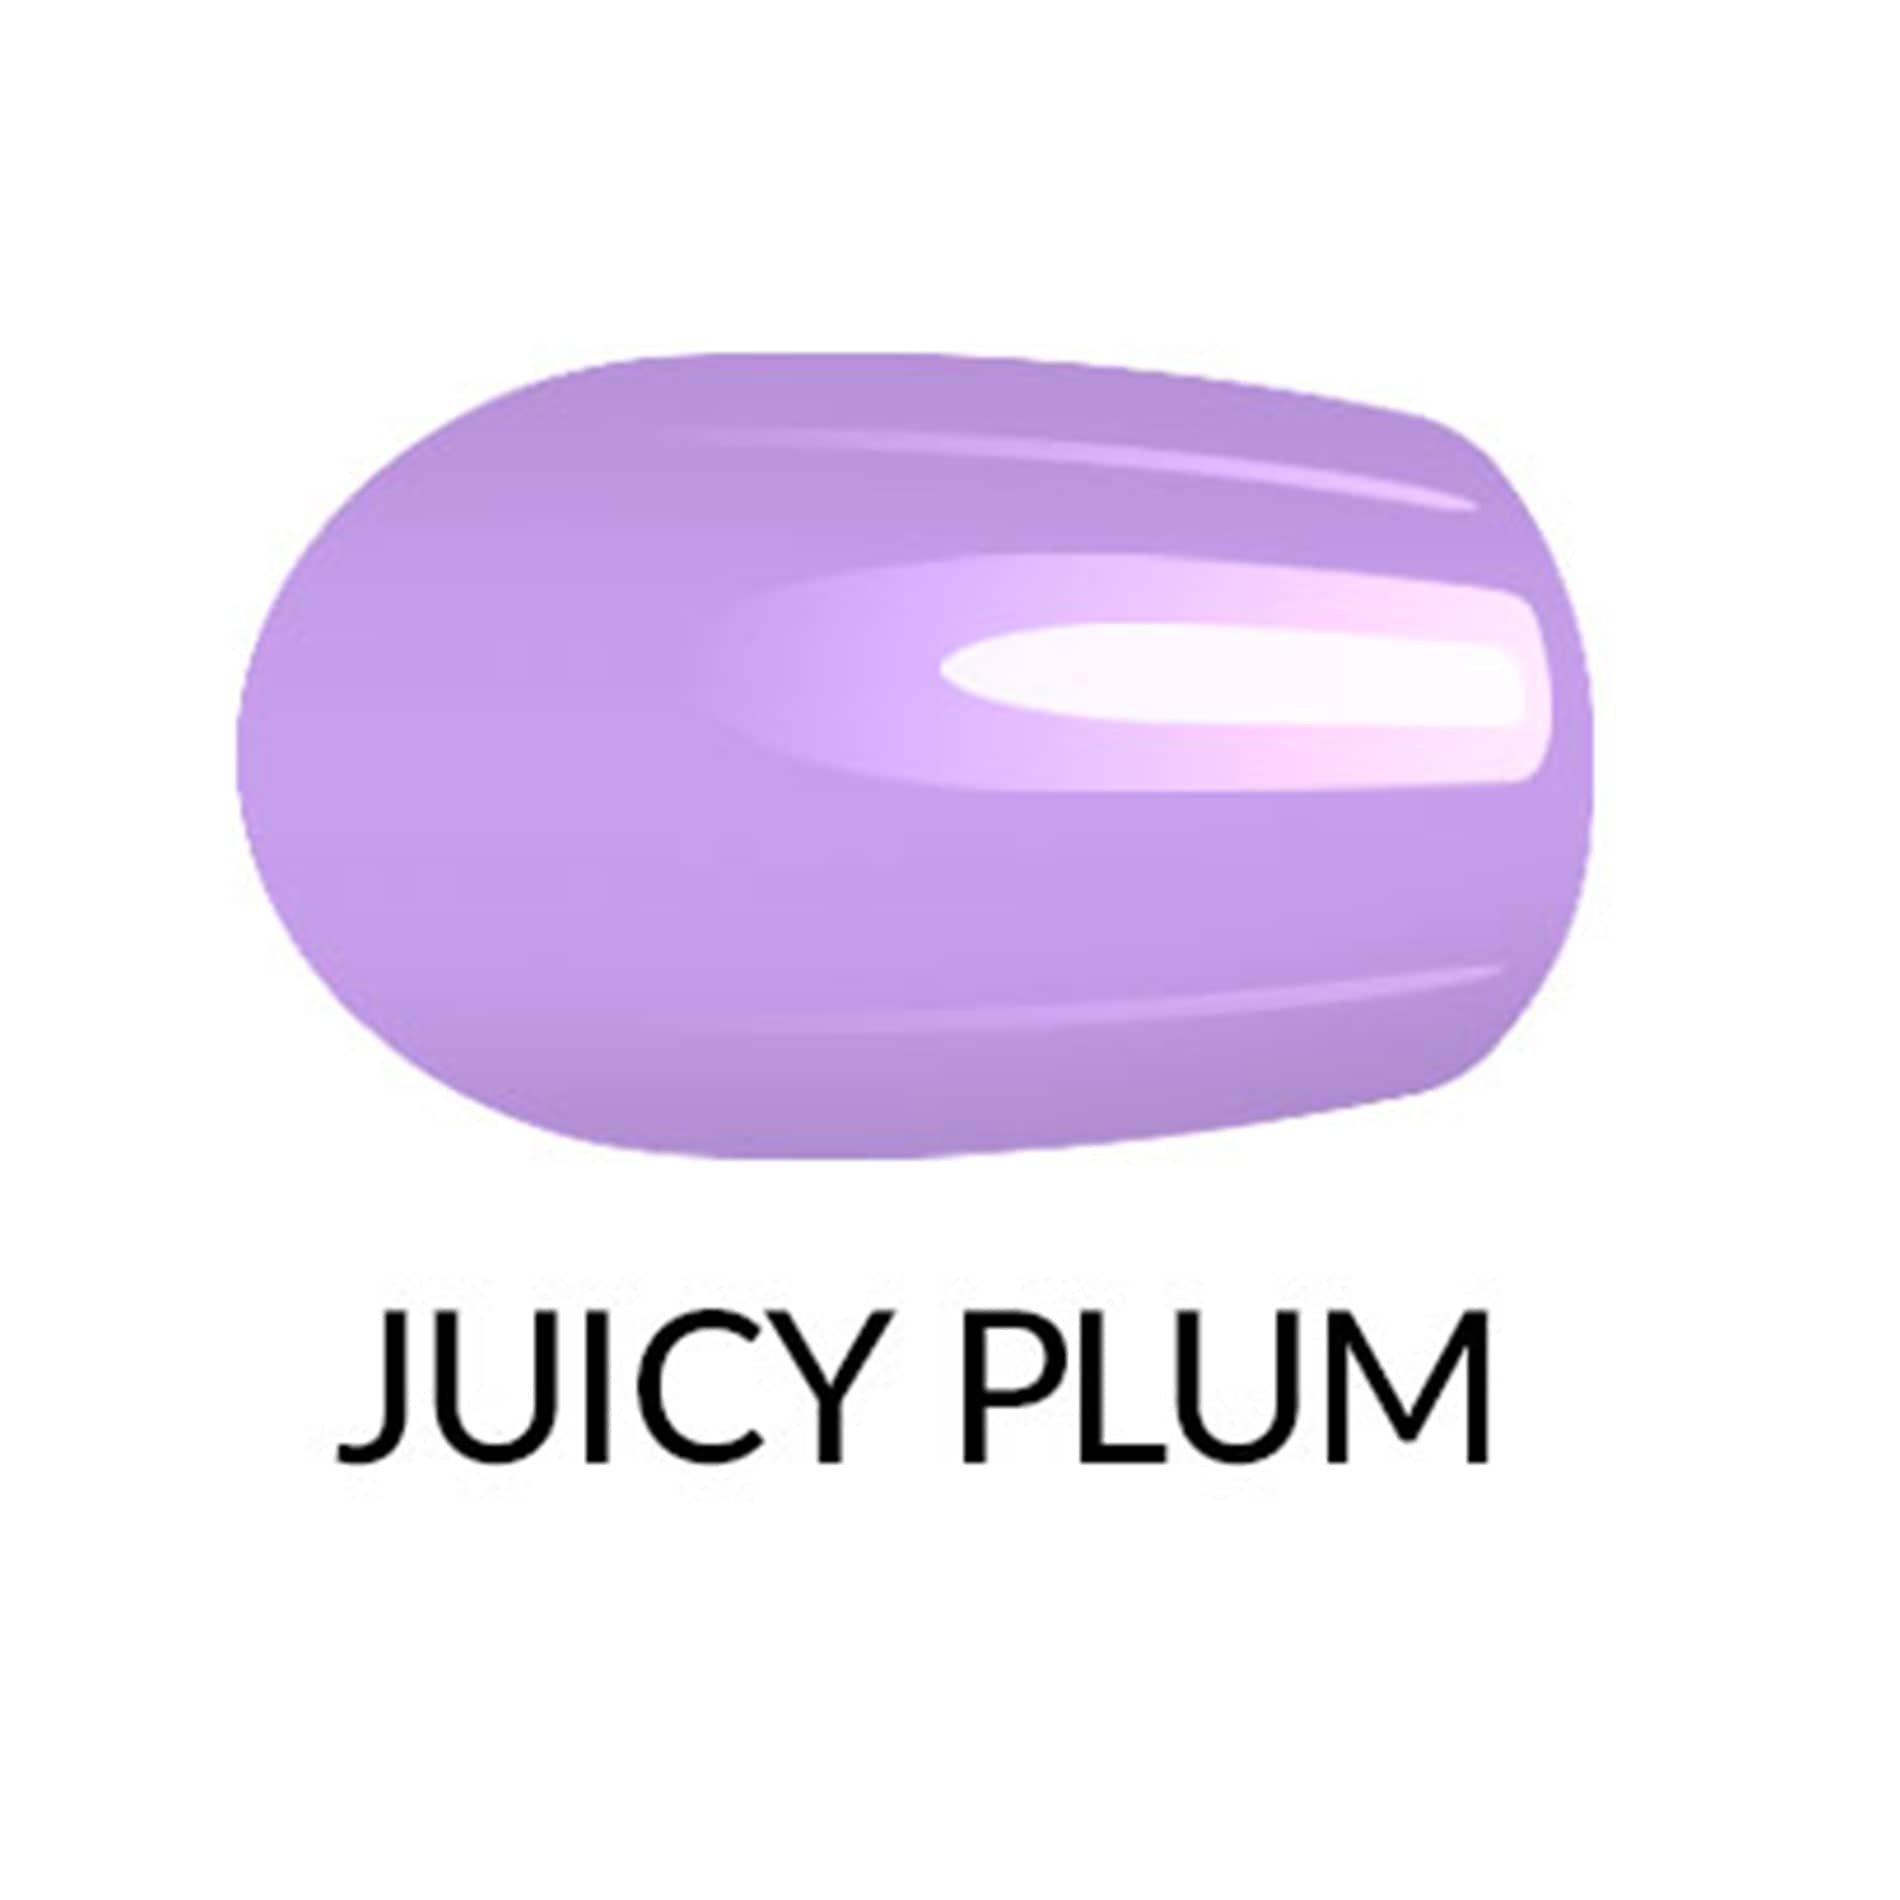 Nagellack-Gel-Finish-Juicy-Plum-603156